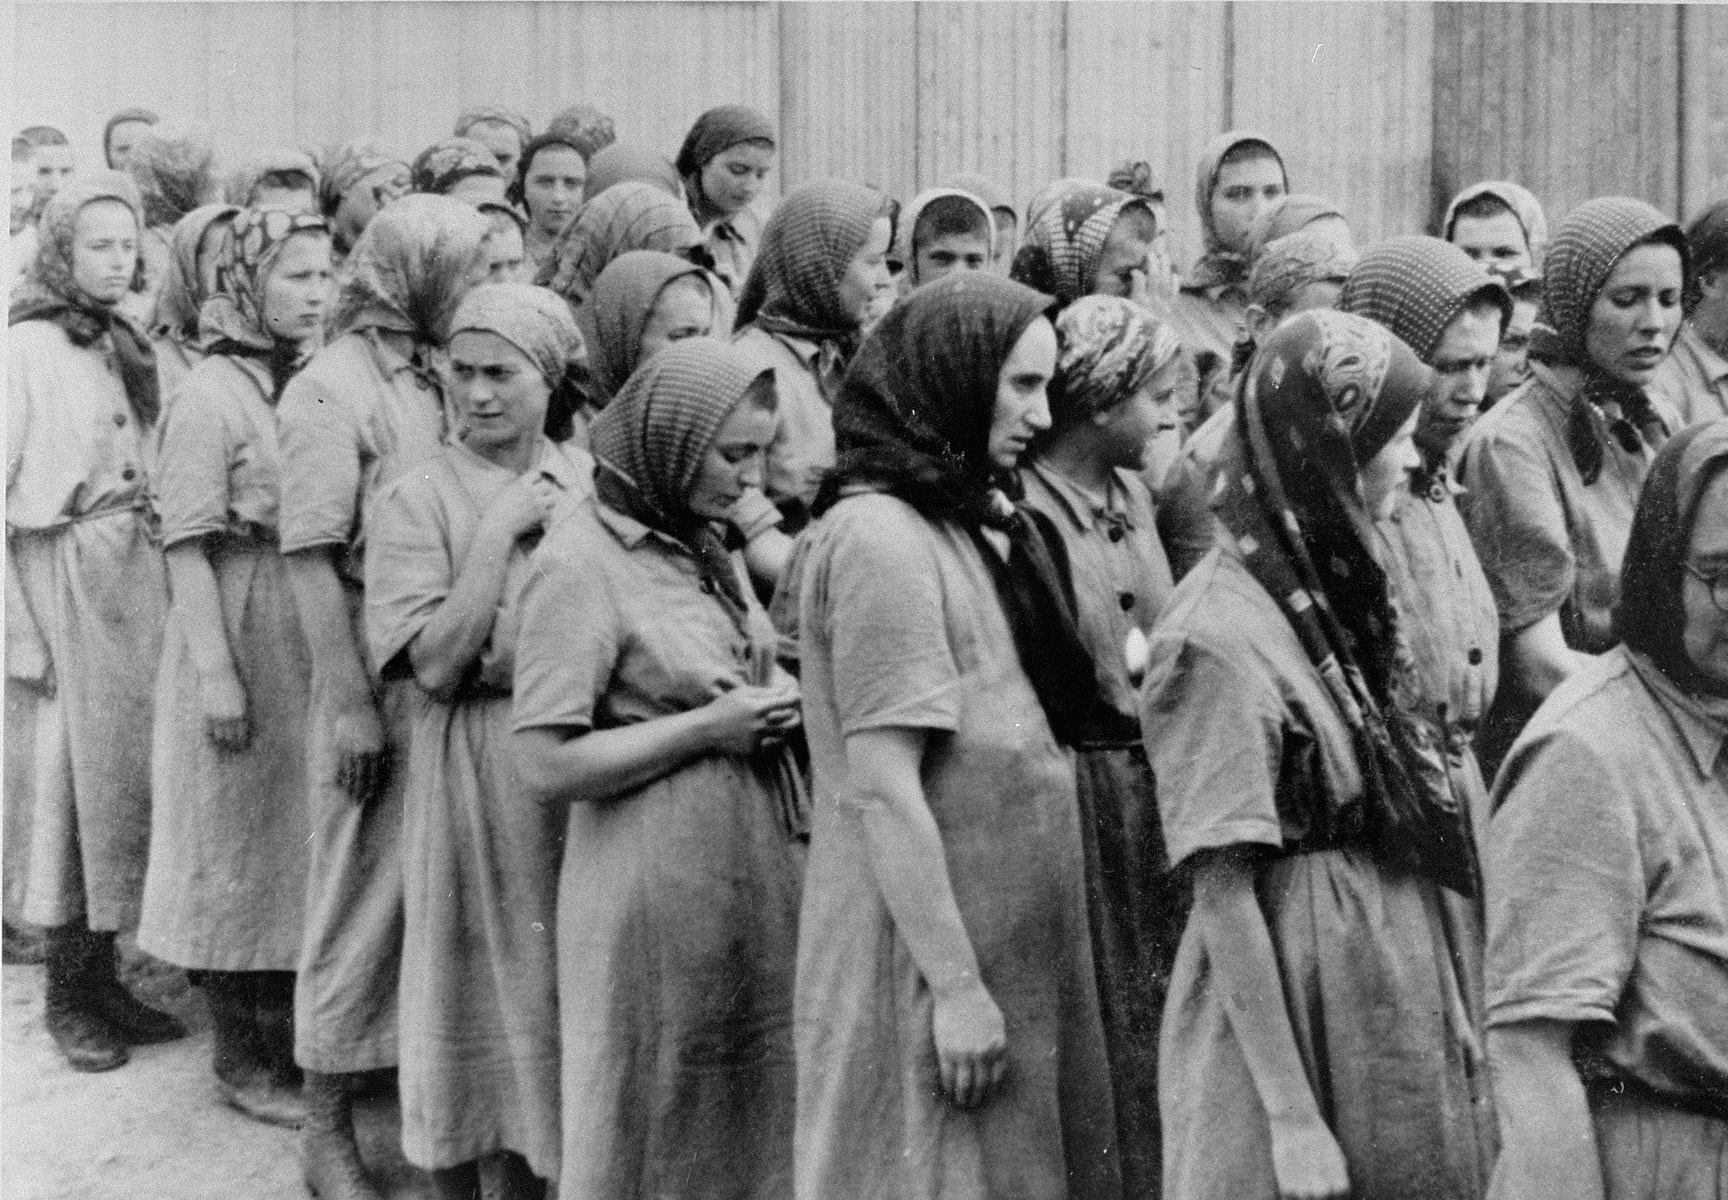 נשים יהודיות מרוס התת־קרפטית שנבחרו לעבודות כפייה באושוויץ־בירקנאו, צועדות אל הצריפים (צילום: רשות הכלל, באמצעות ויקישיתוף)